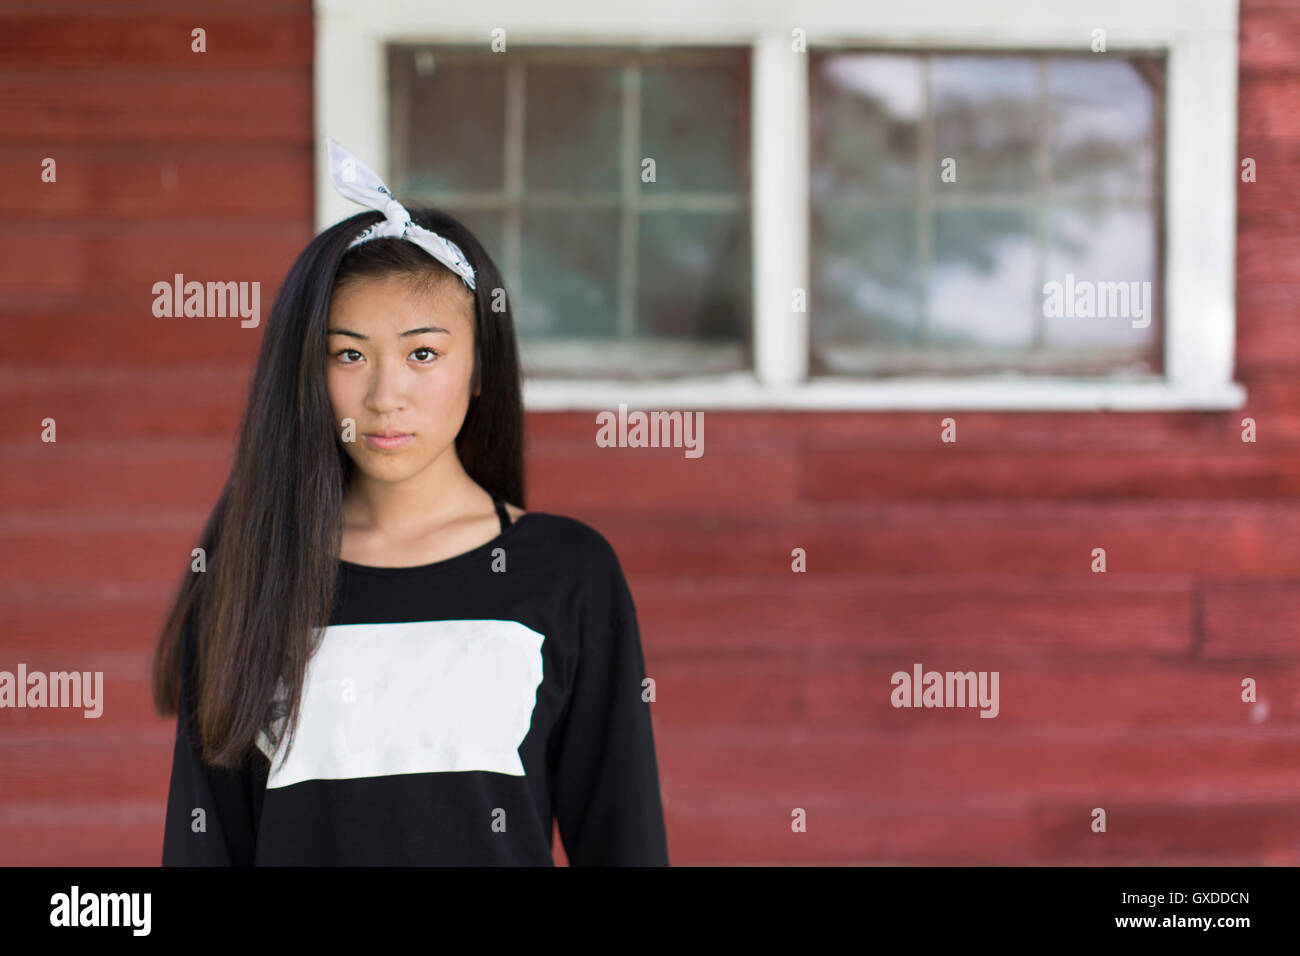 Porträt von Teenager-Mädchen mit langen schwarzen Haaren und Haarband in Veranda Stockfoto